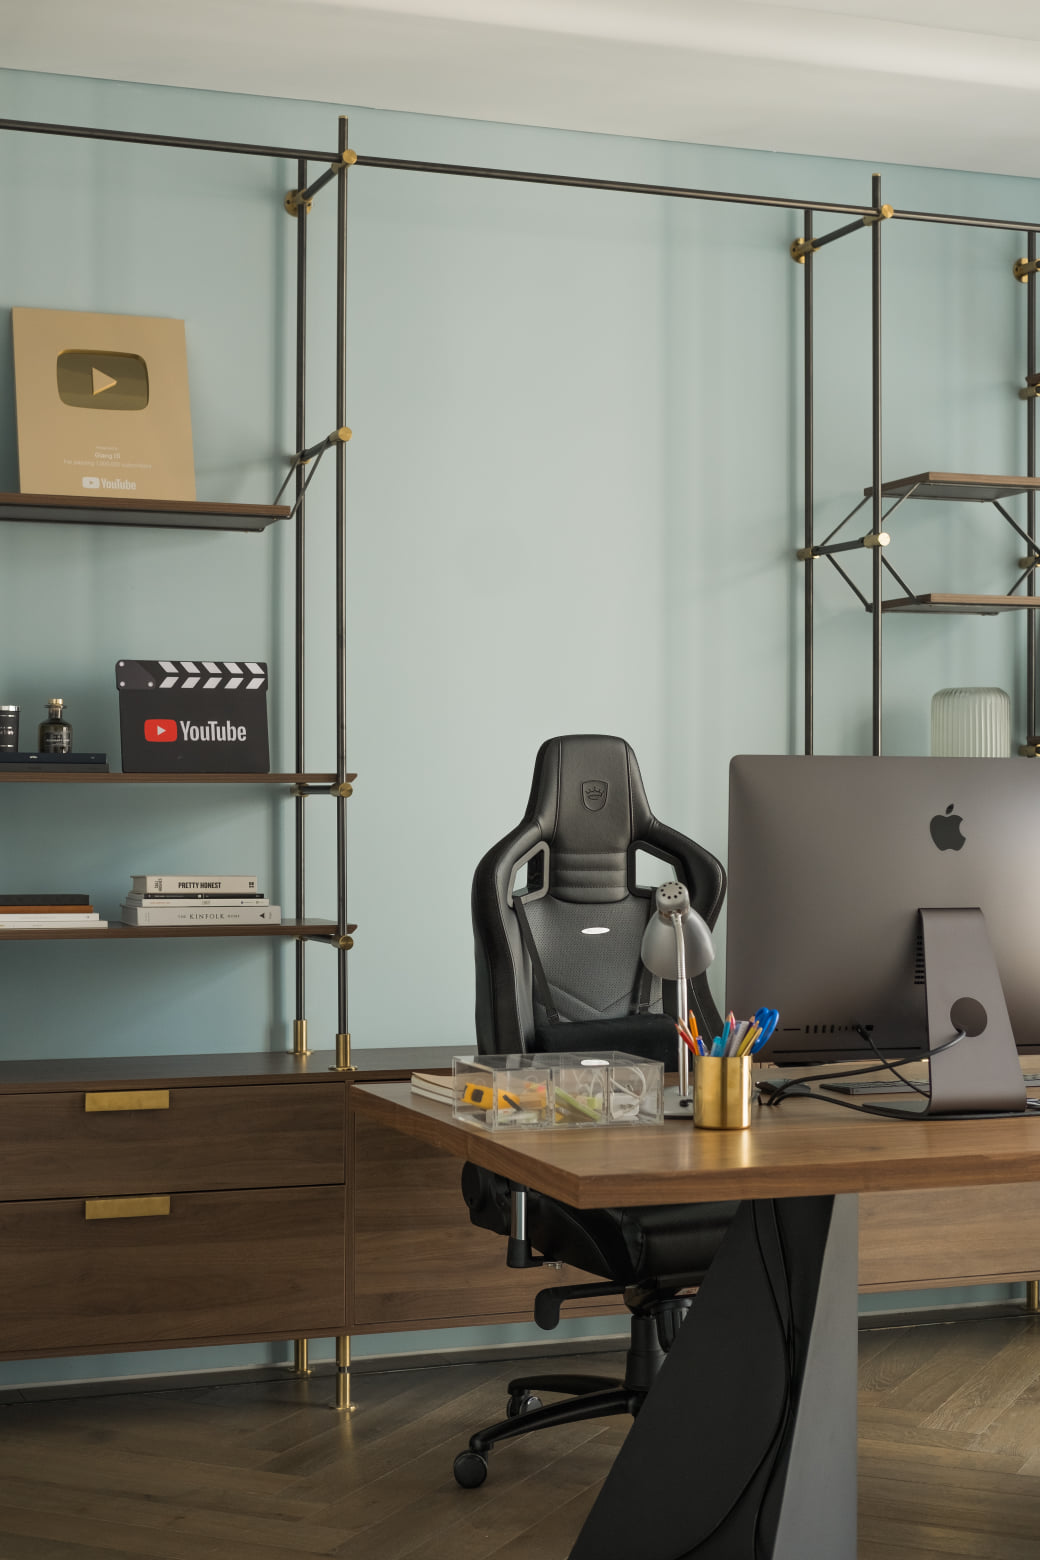 Văn phòng làm việc riêng của Giang Ơi được thiết kế với tone màu xanh thoải mái cùng với nội thất vô cùng tinh tế, hiện đại